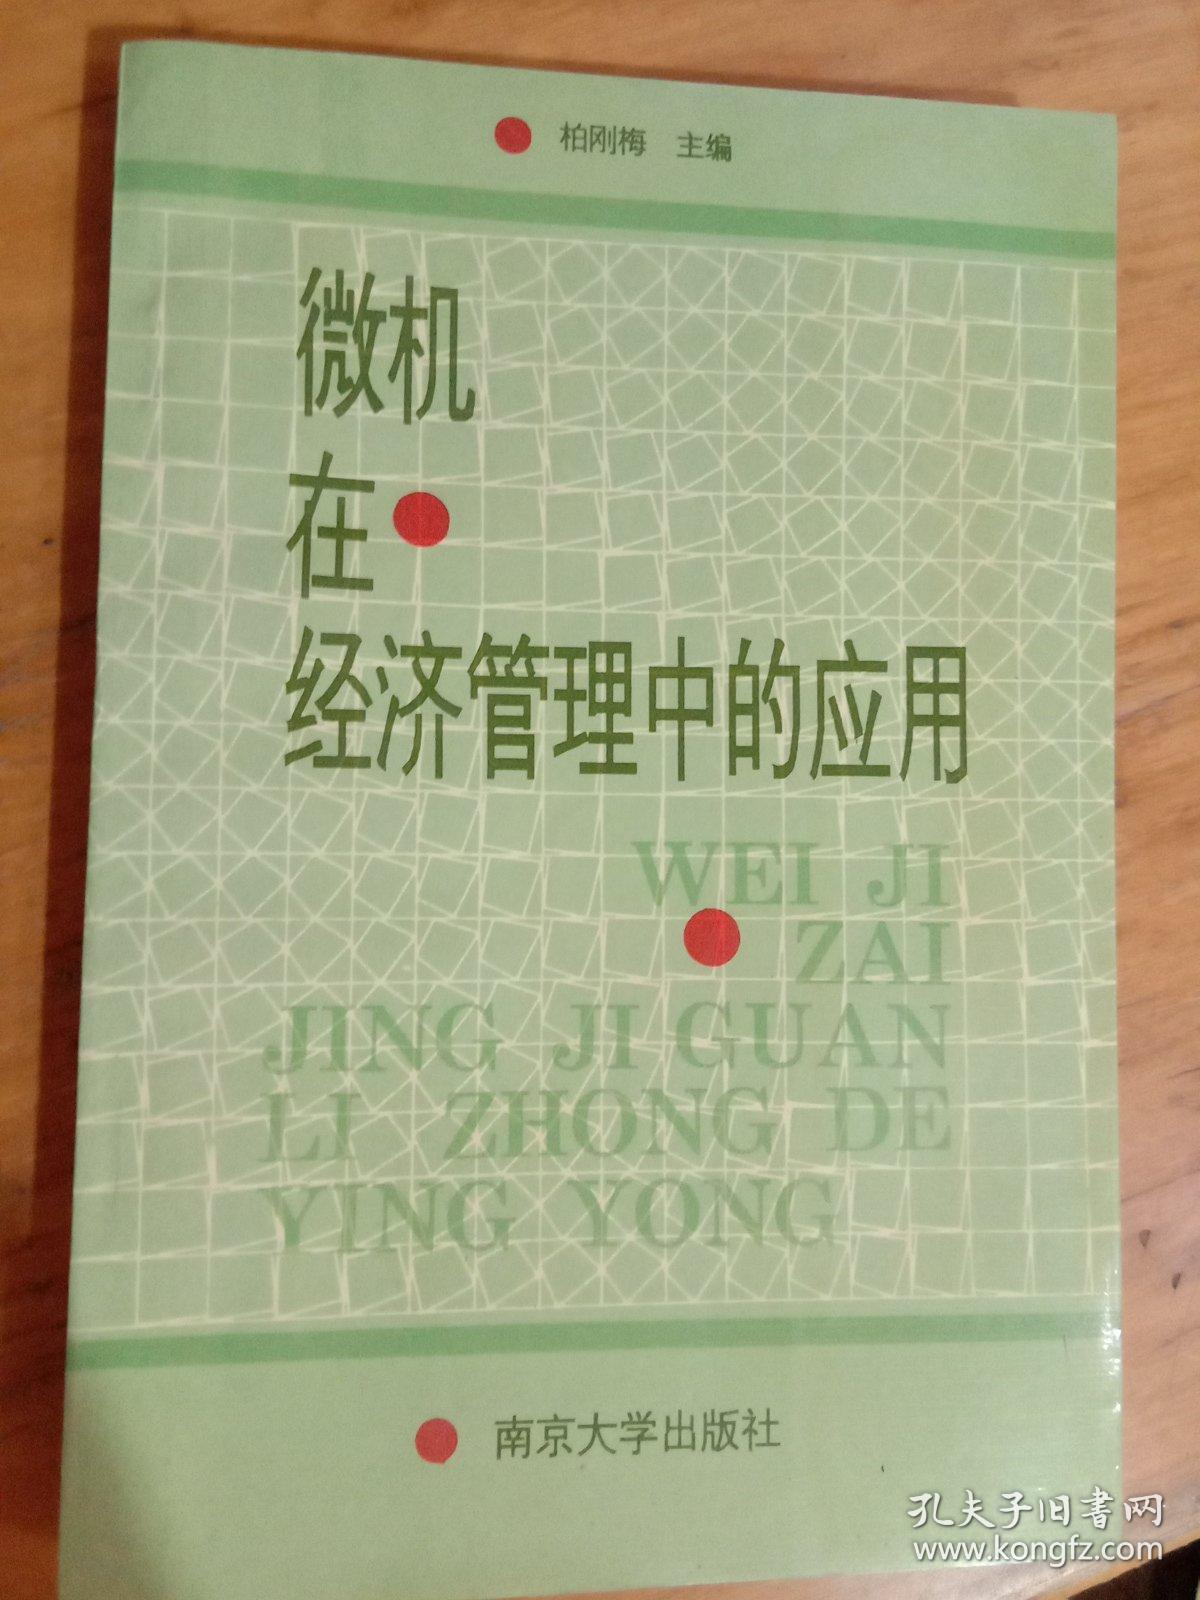 微机在经济管理中的应用   柏刚梅   南京大学出版社   一版一印